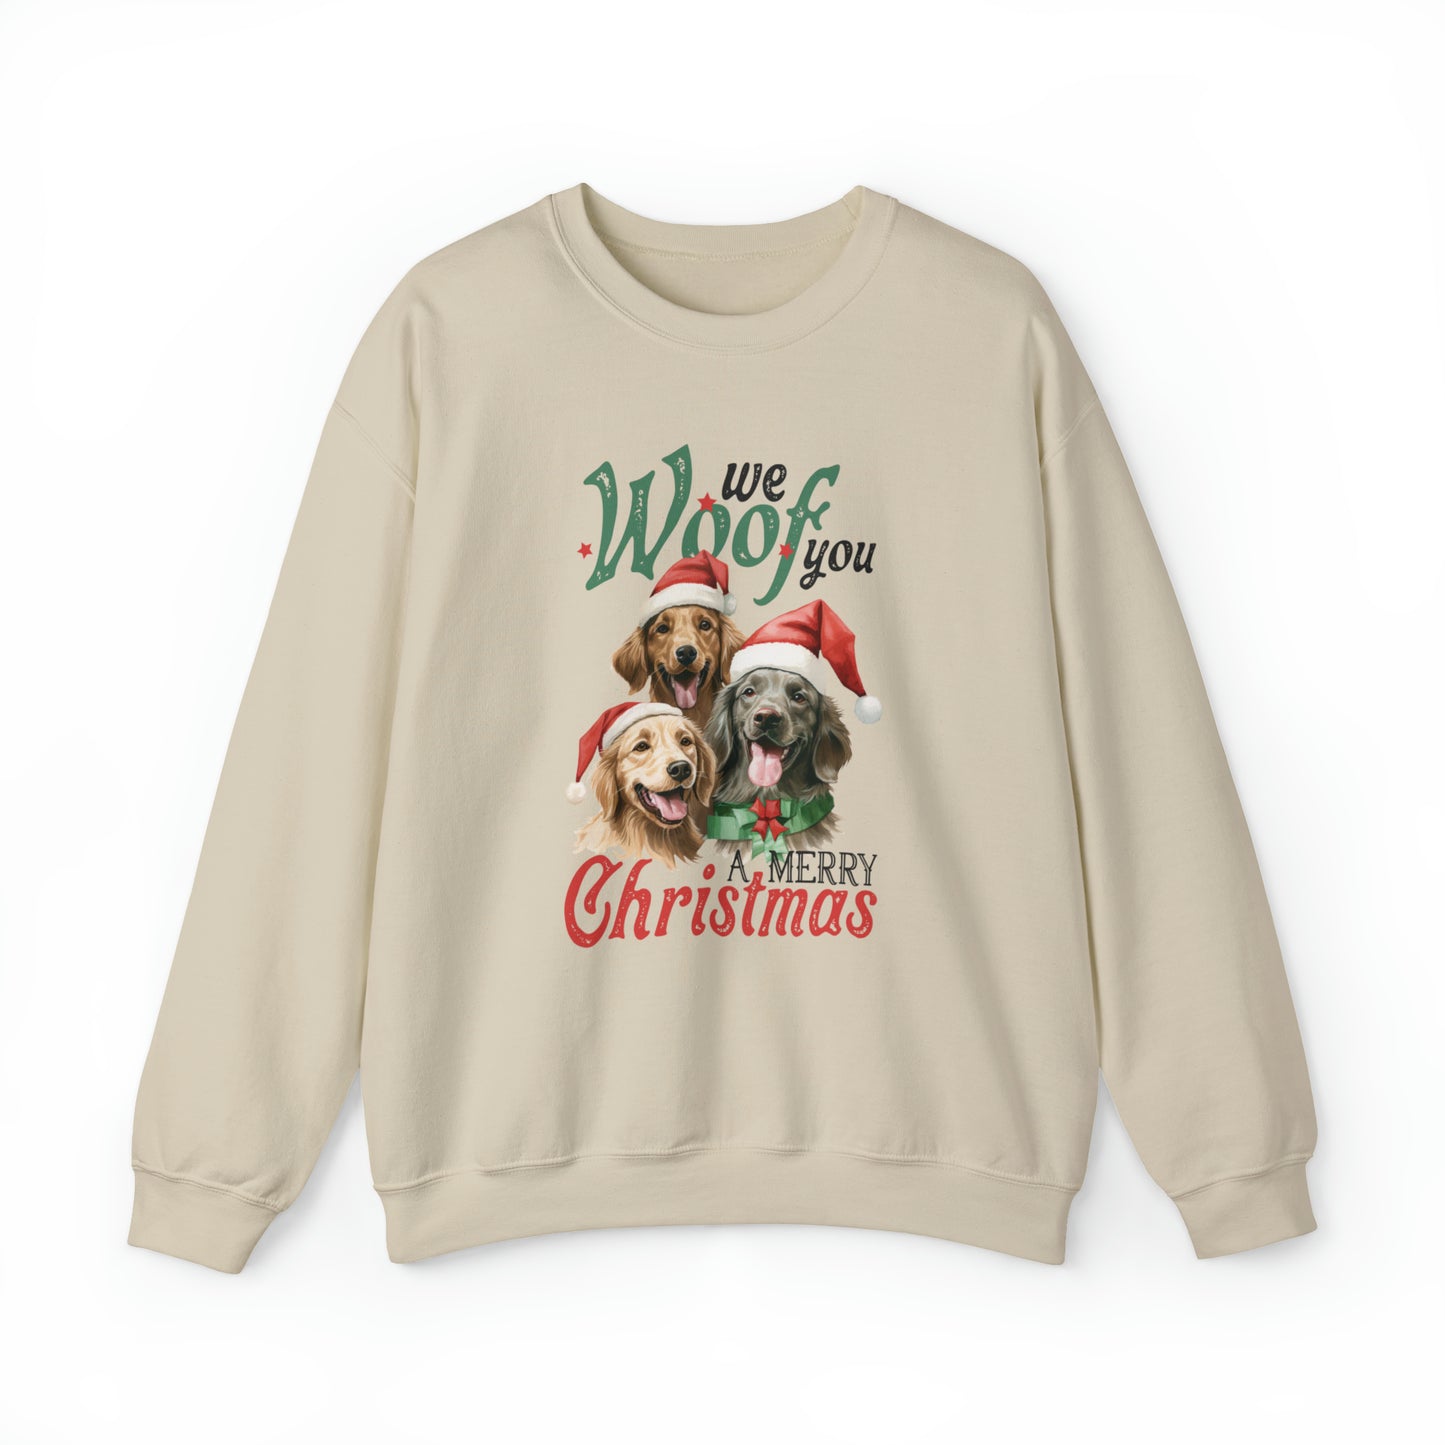 We Woof You A Merry Christmas | Crewneck Sweatshirt | Unisex Sizing Christmas Sweatshirt